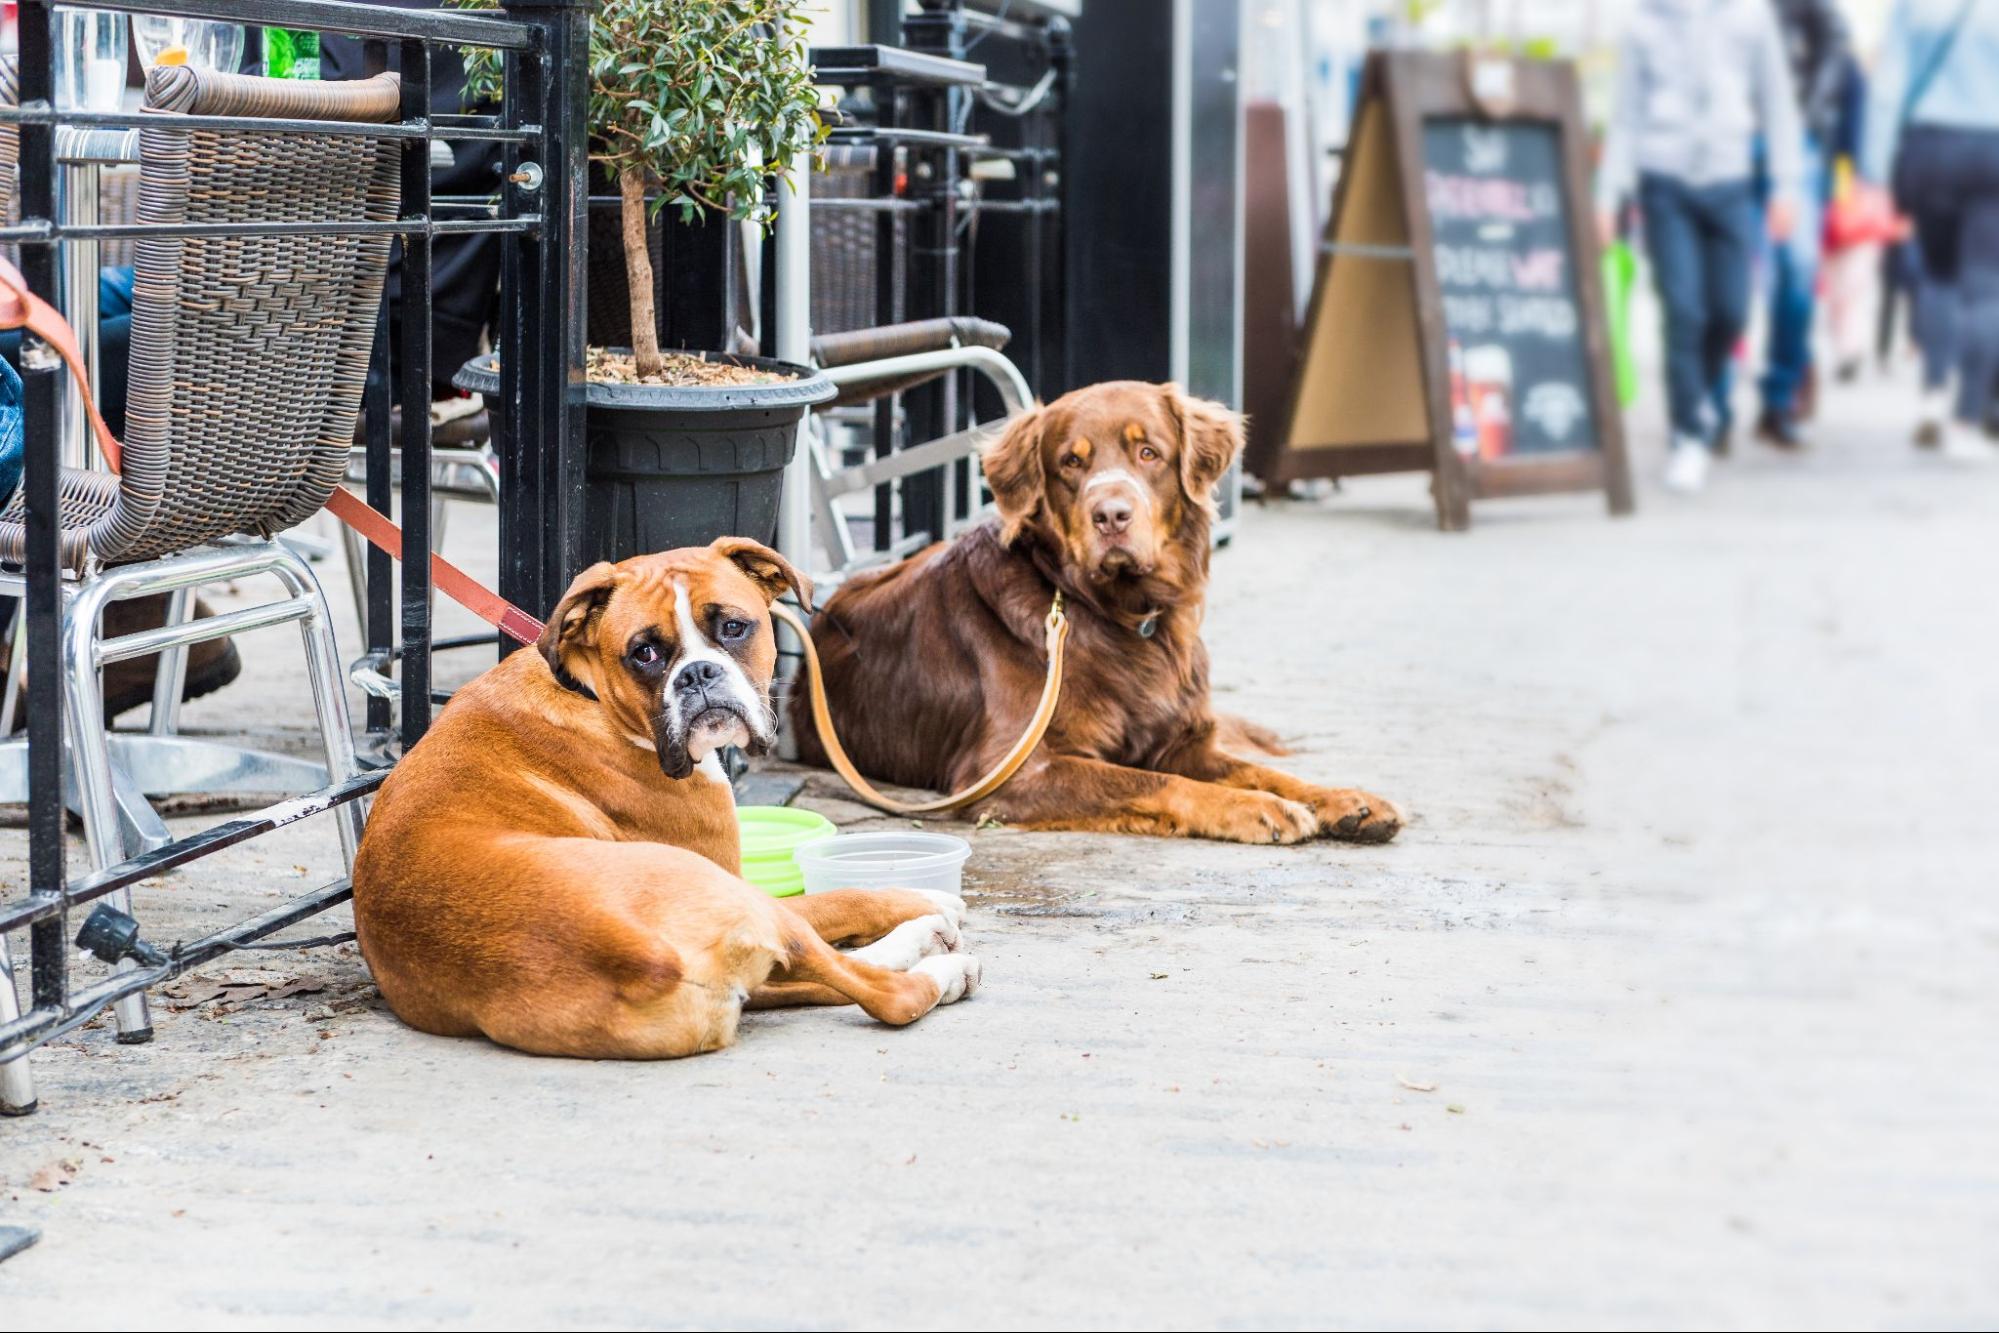 6 Dog-Friendly Restaurants in Austin